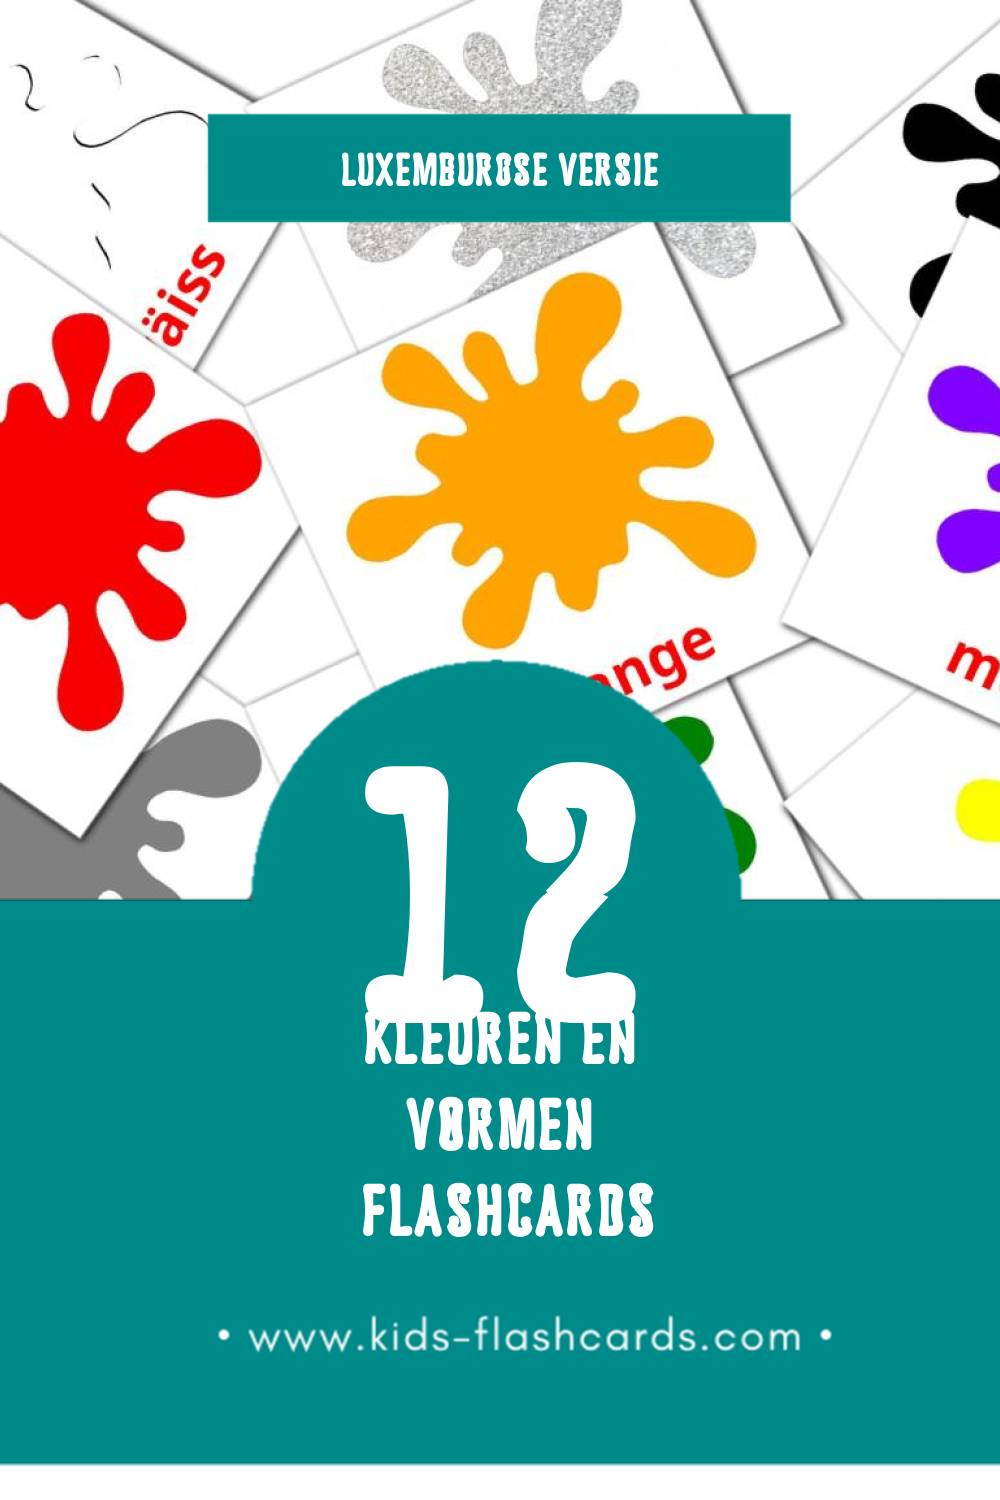 Visuele Faarwen a Formen Flashcards voor Kleuters (12 kaarten in het Luxemburgs)